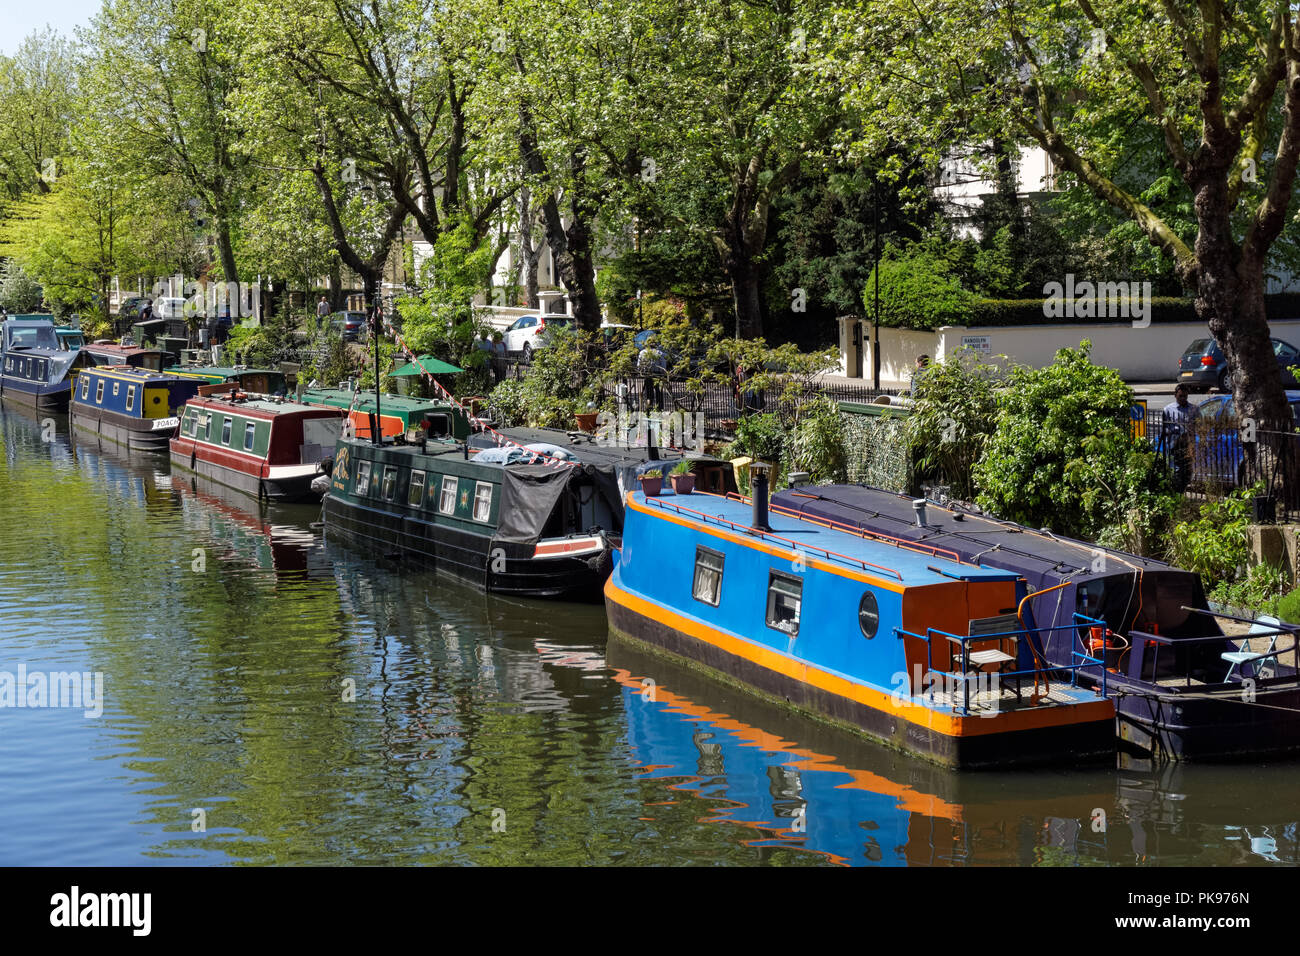 Narrowboats at Little Venice, London England United Kingdom UK Stock Photo